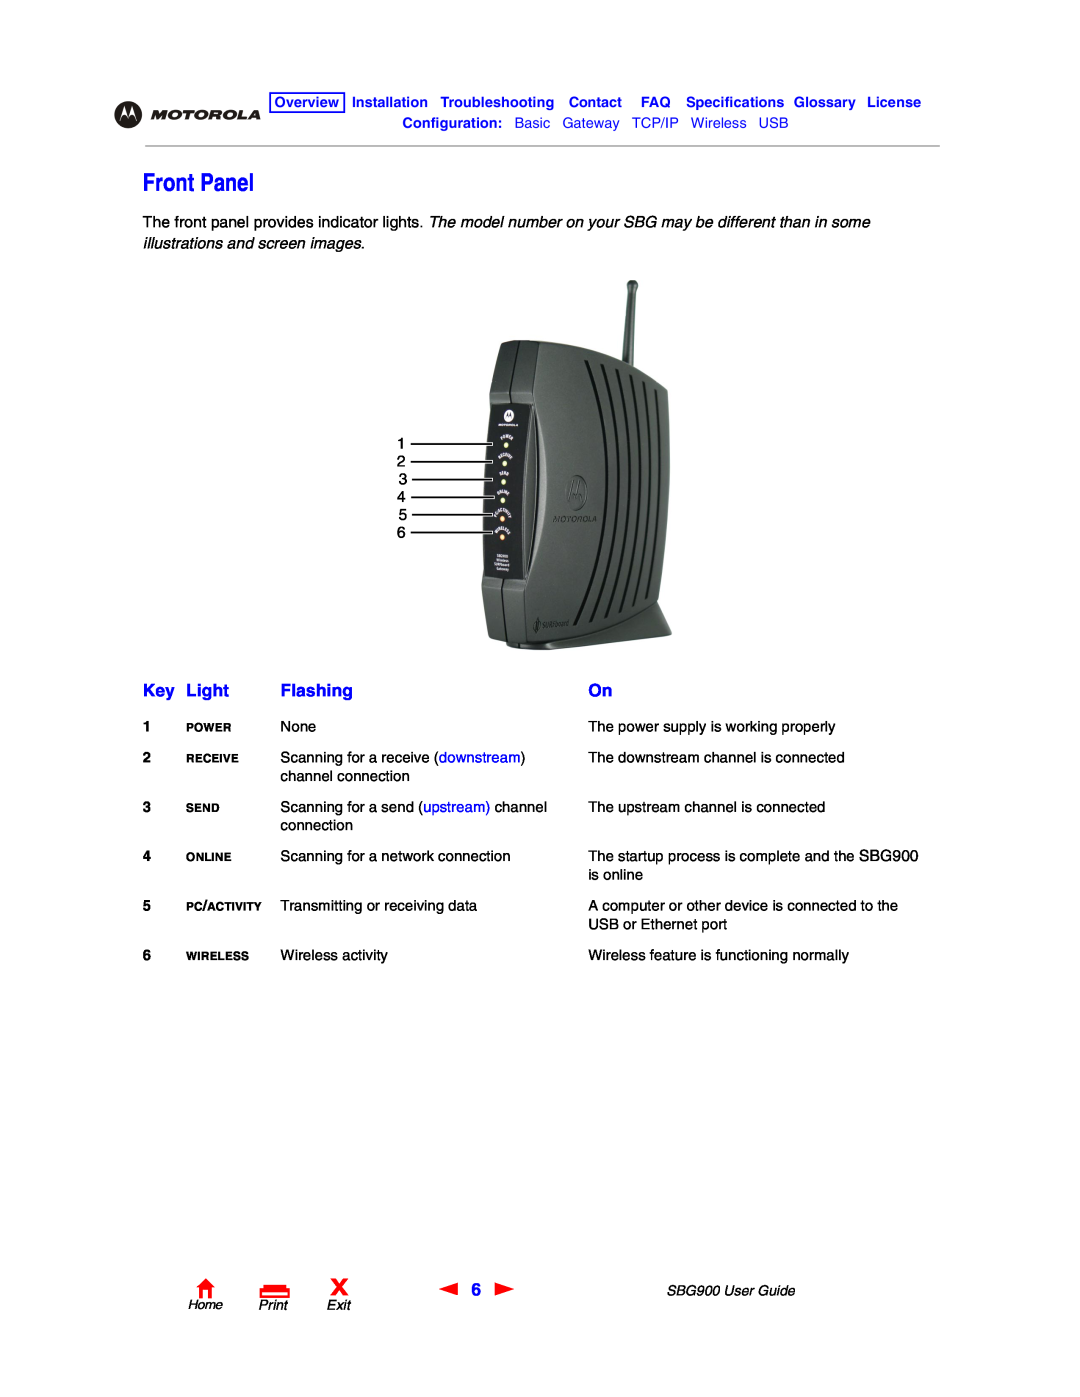 Motorola SBG900 manual Front Panel, Light, Flashing, Home Print Exit 